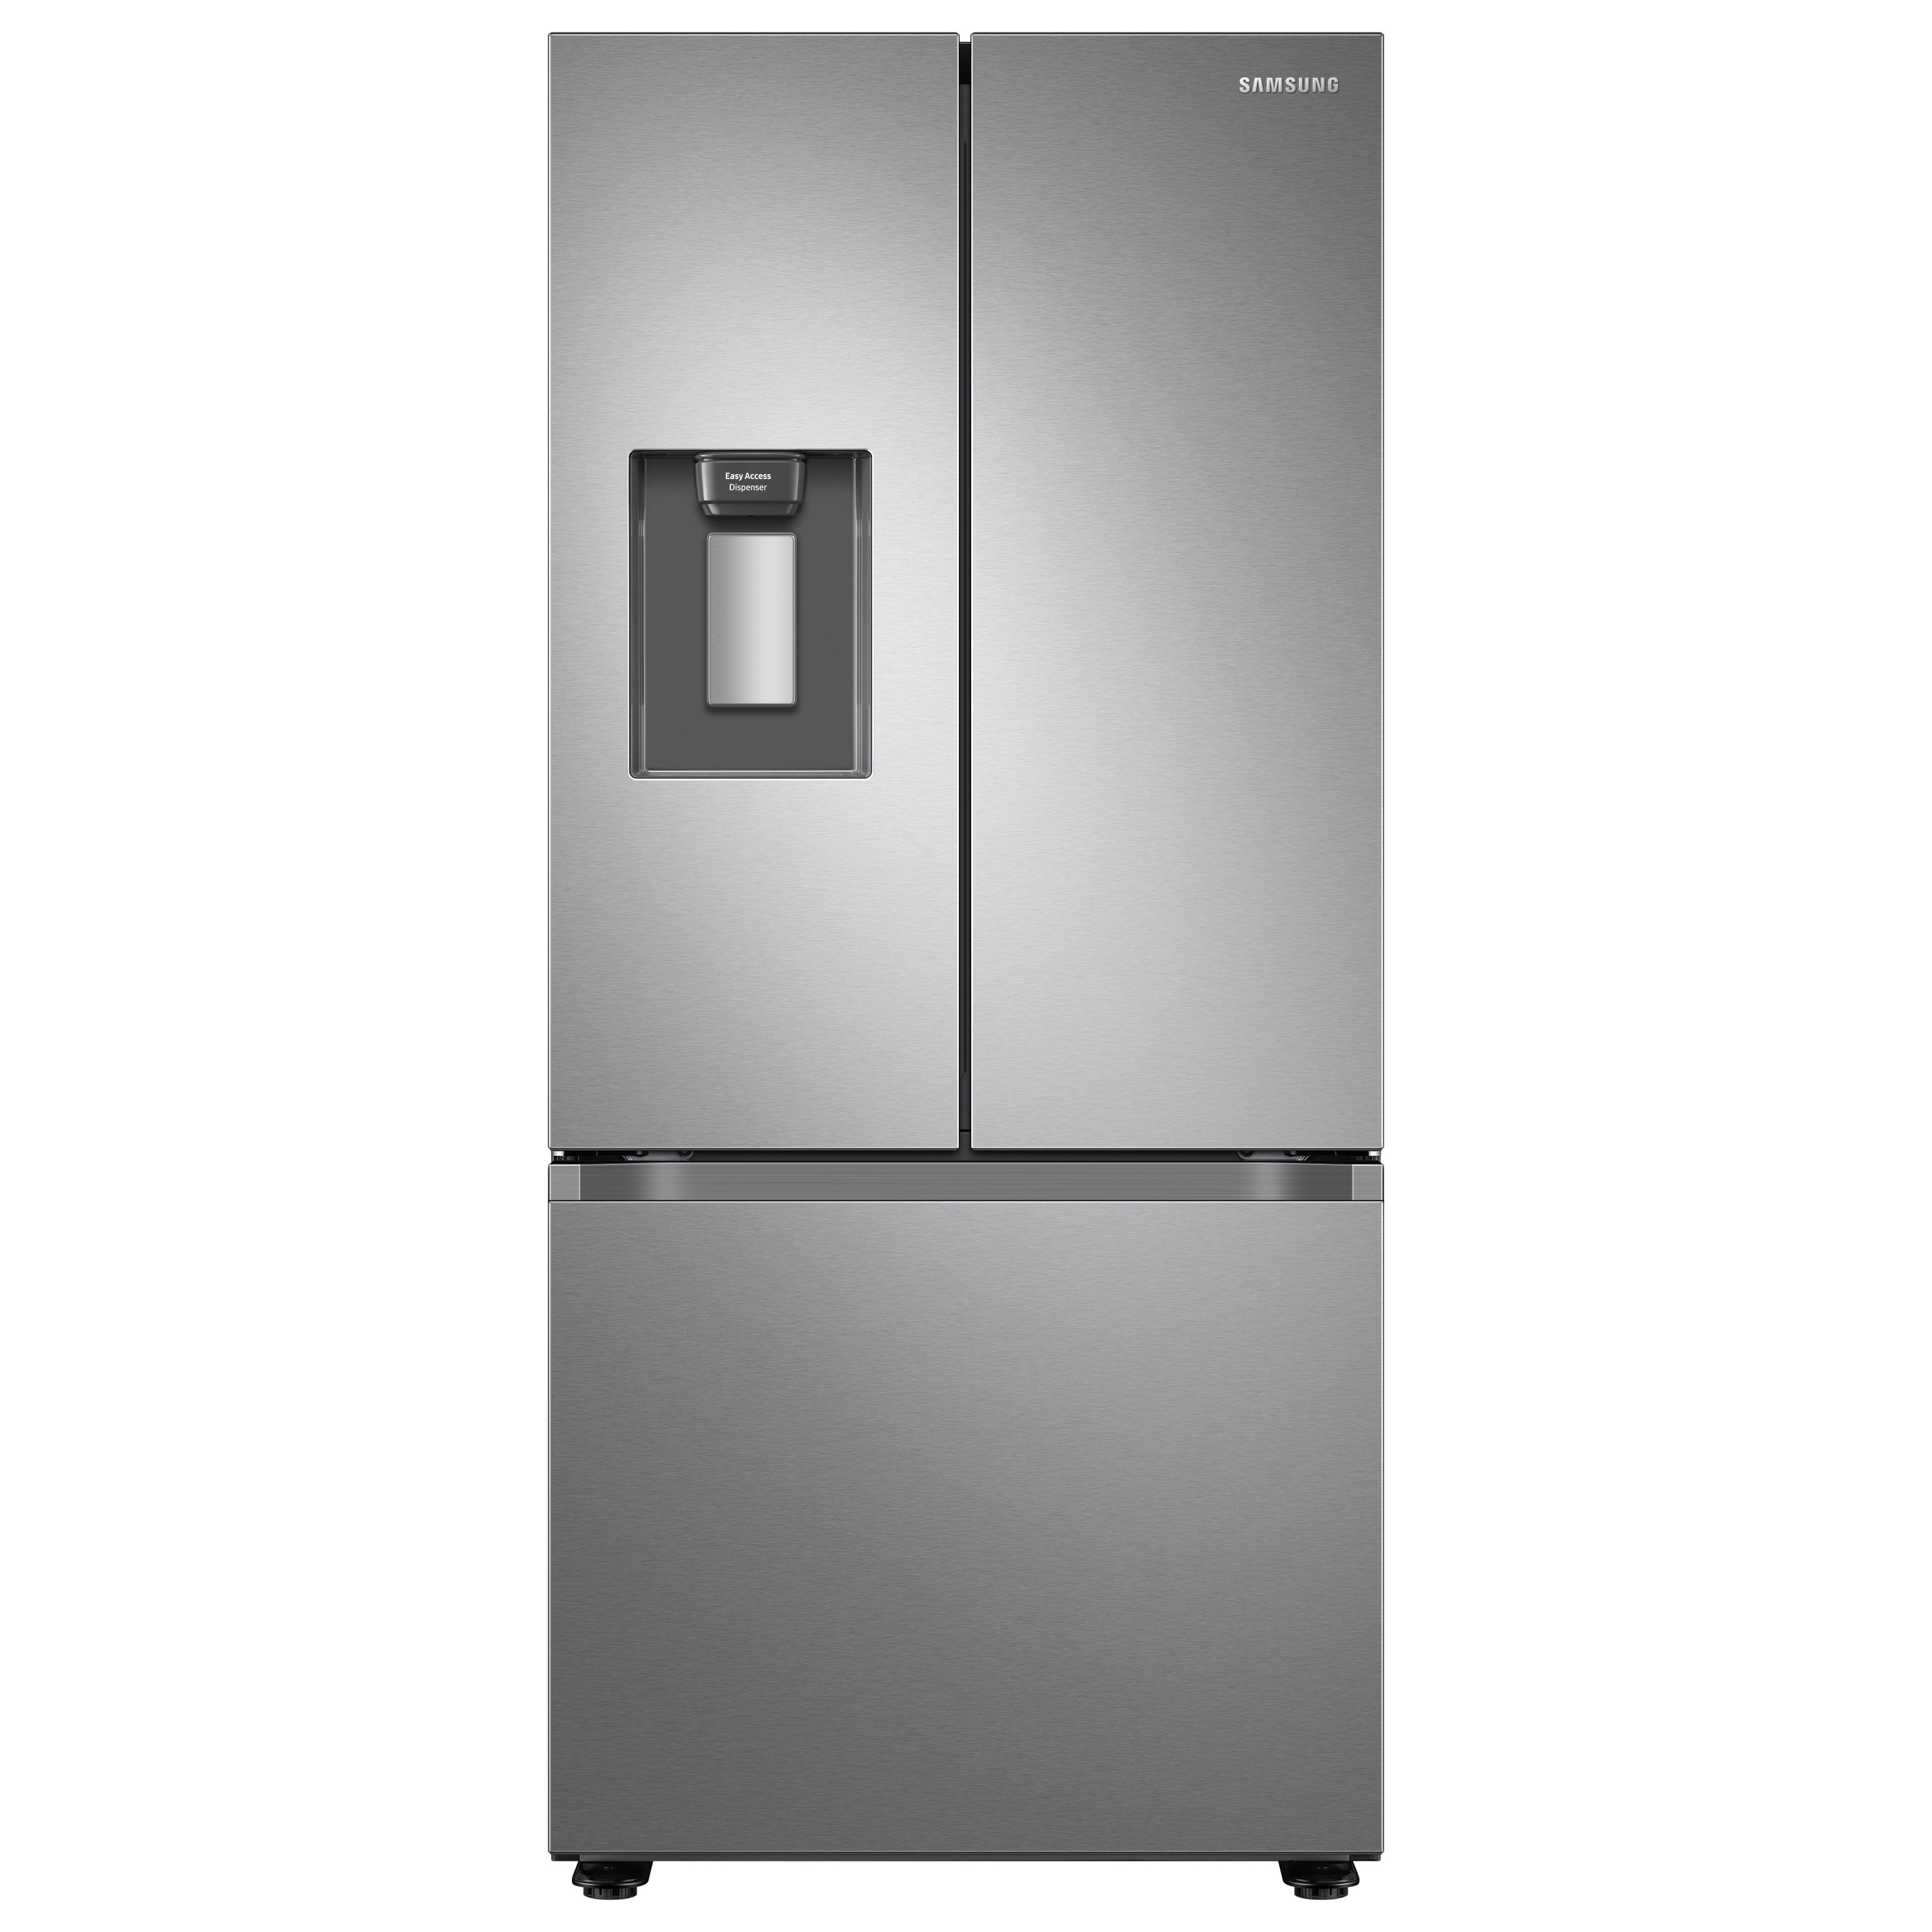 Samsung 22 cu. ft. Smart 3-Door French Door Refrigerator with External Water Dispenser in Silver(RF22A4221SR/AA)